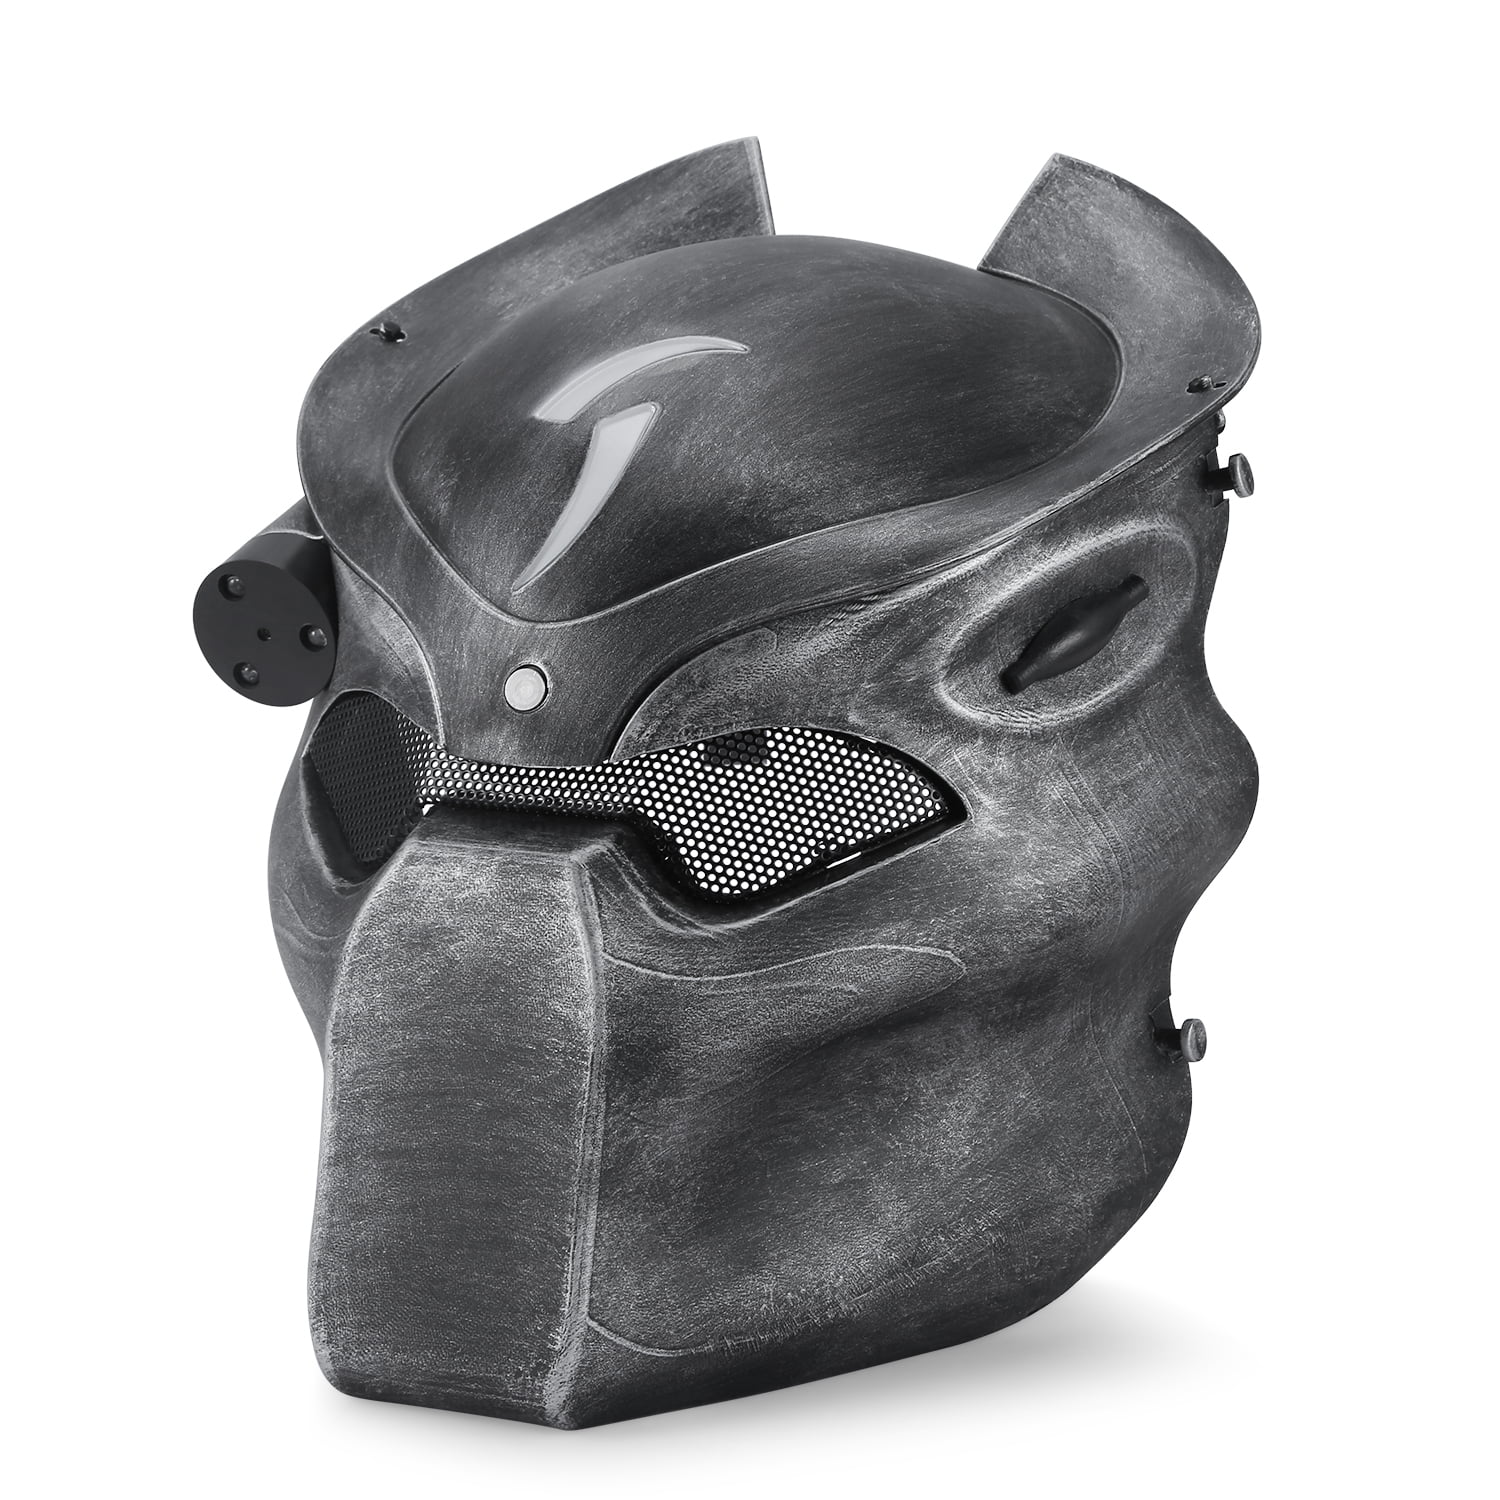 NEW Fiber Resin Mesh Eye Airsoft CS Paintball Full Face Protection Skull Mask 